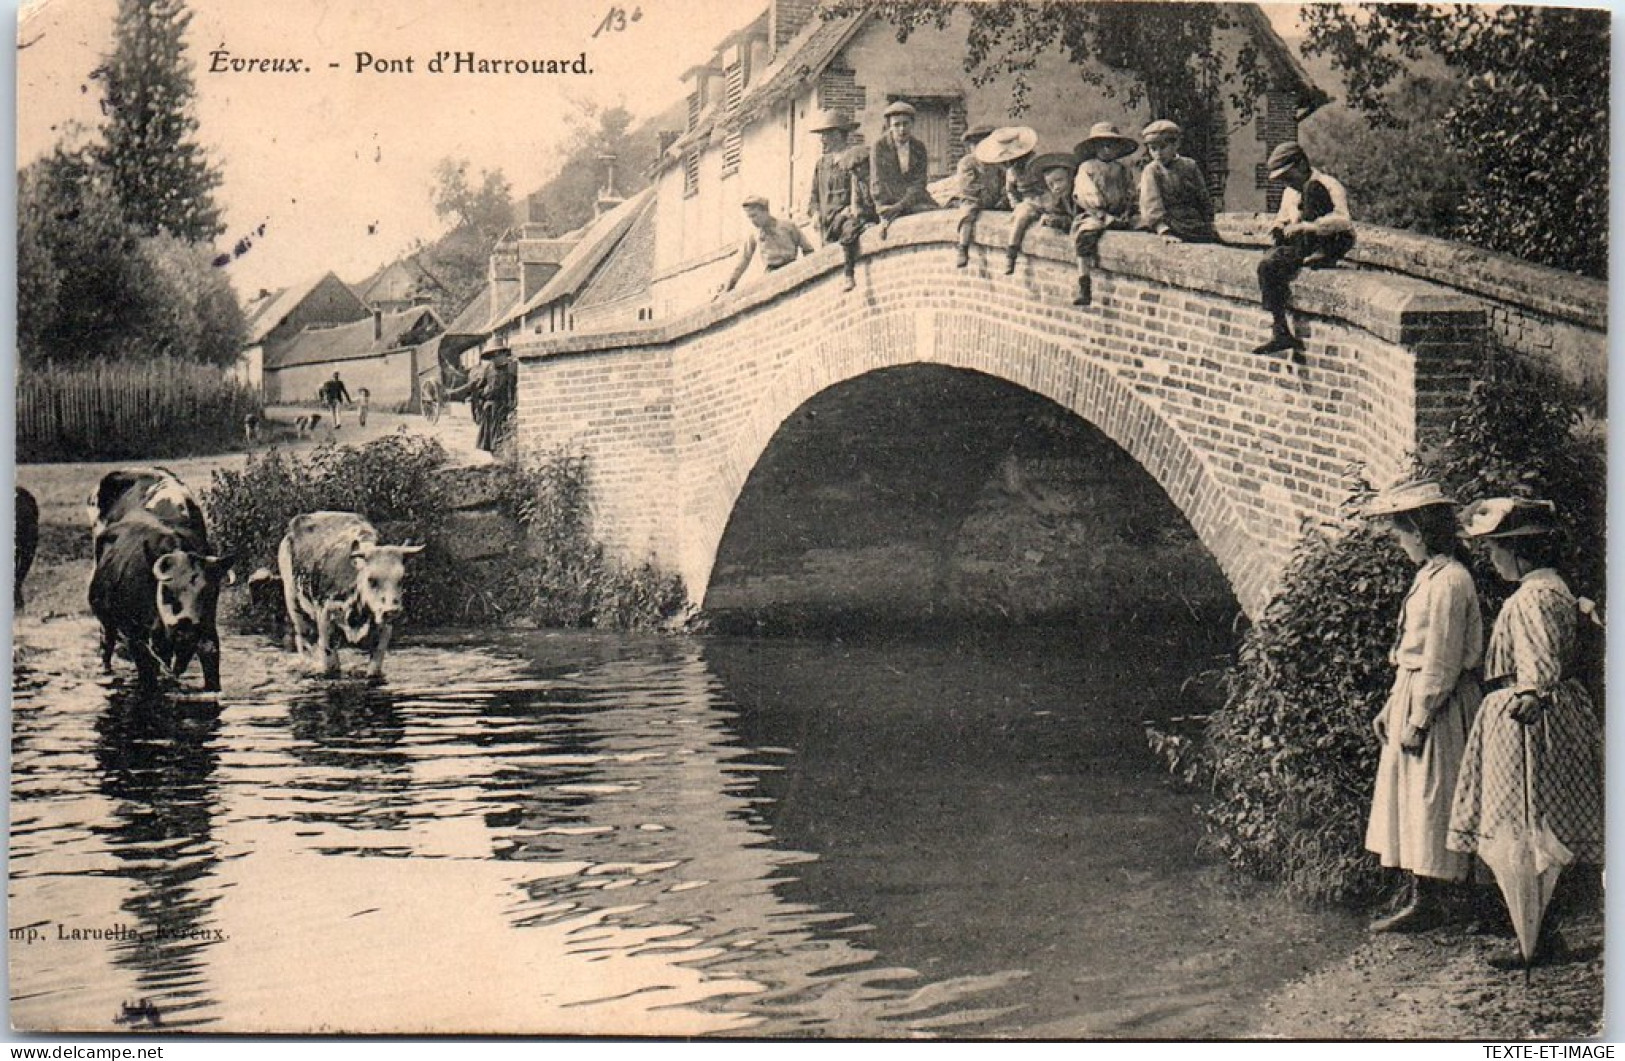 27 EVREUX - Pont D'harrouard.  - Evreux